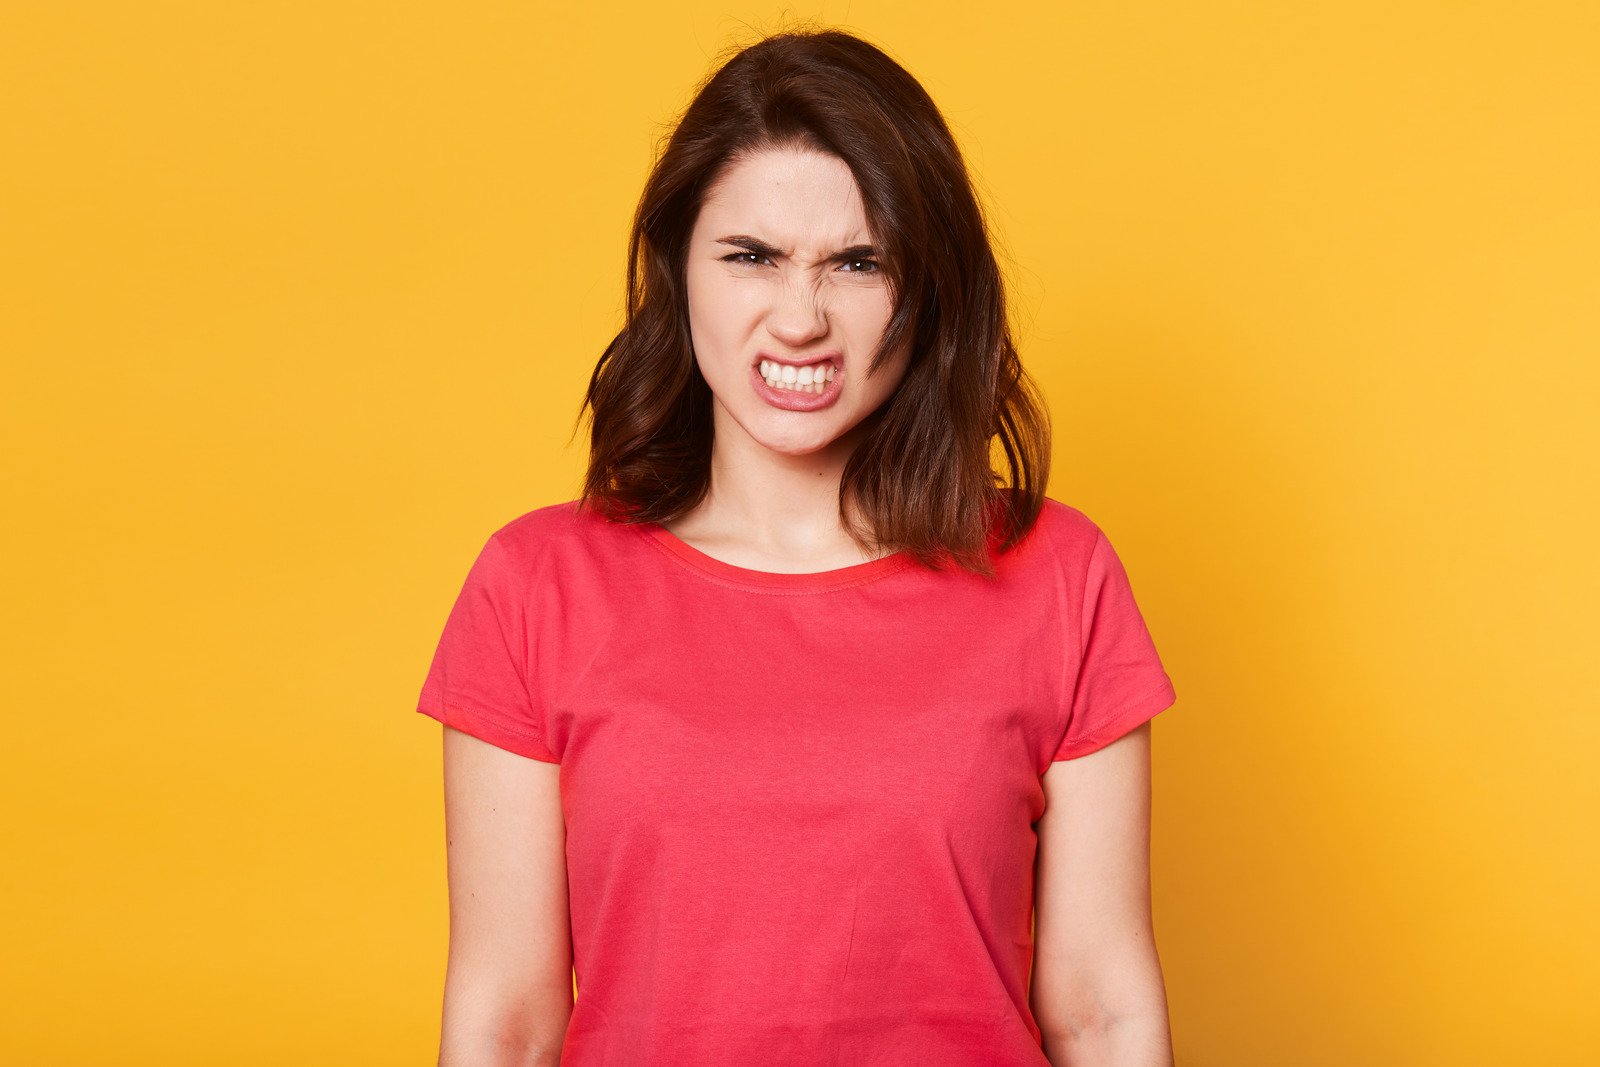 Imagem de uma mulher irritada e irritada com uma expressão facial desagradável - Fotos do Canva